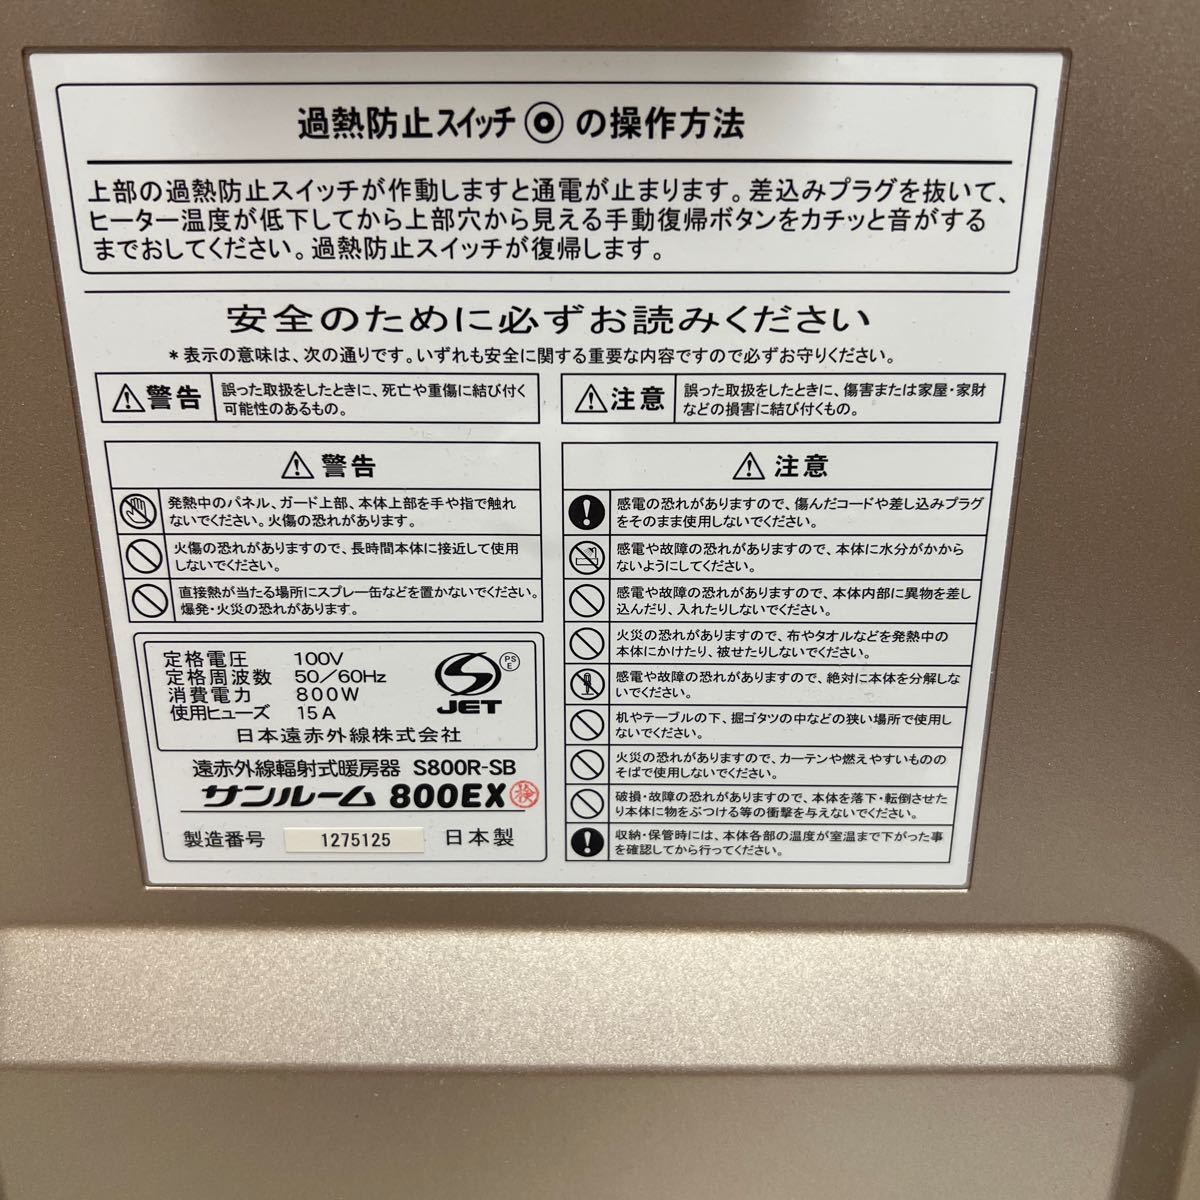 日本赤外線株式会社　サンルーム 800EX 遠赤外線輻射式暖房器 S800R-SB 家庭用 パネルヒーター 電気ストーブ 動作品_画像6